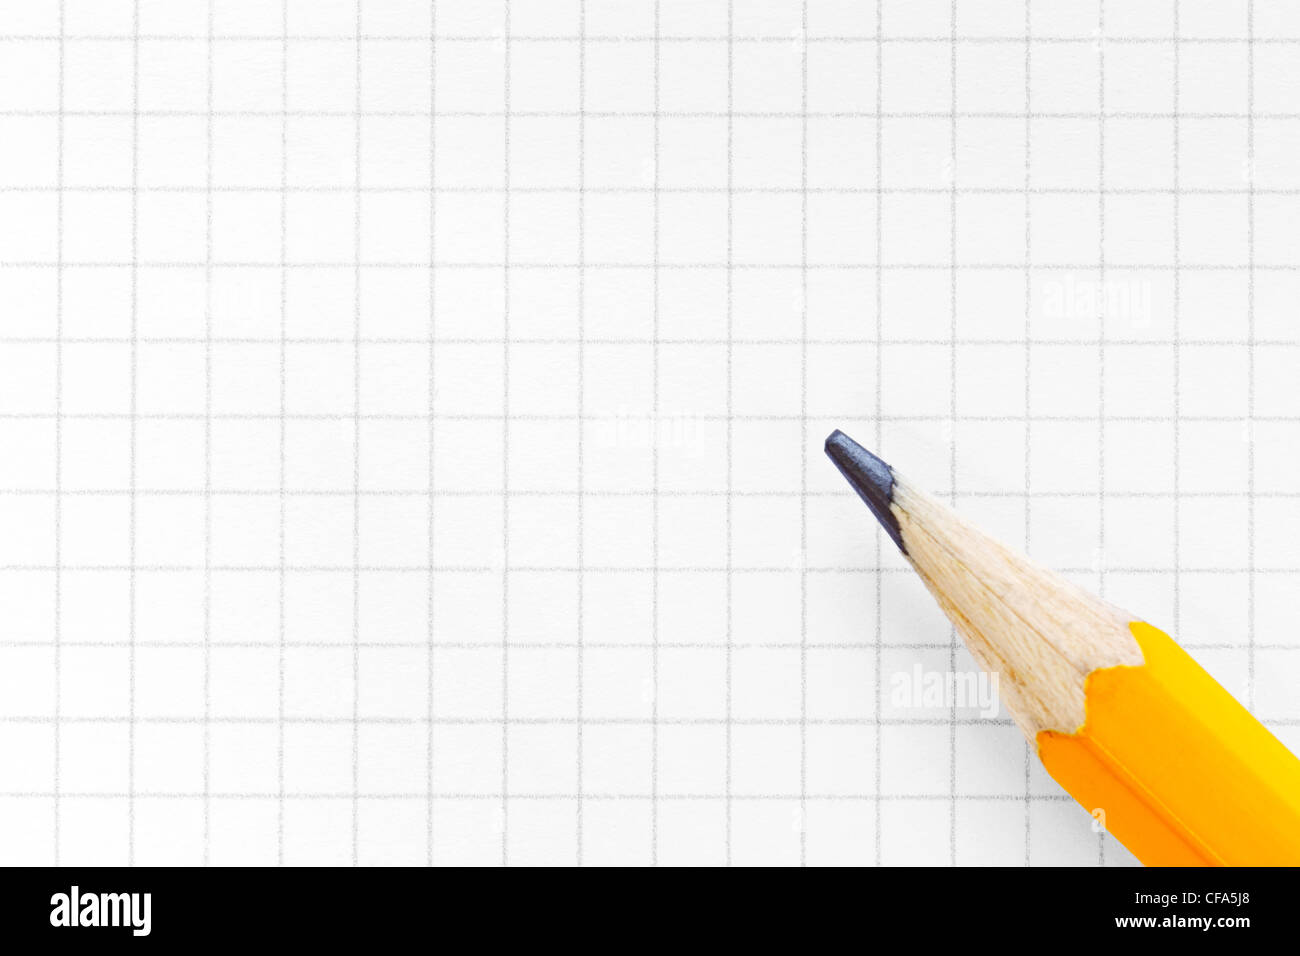 Foto de papel cuadriculado cuadrado en blanco con un lápiz amarillo, agregar su propio texto o diagrama. Foto de stock